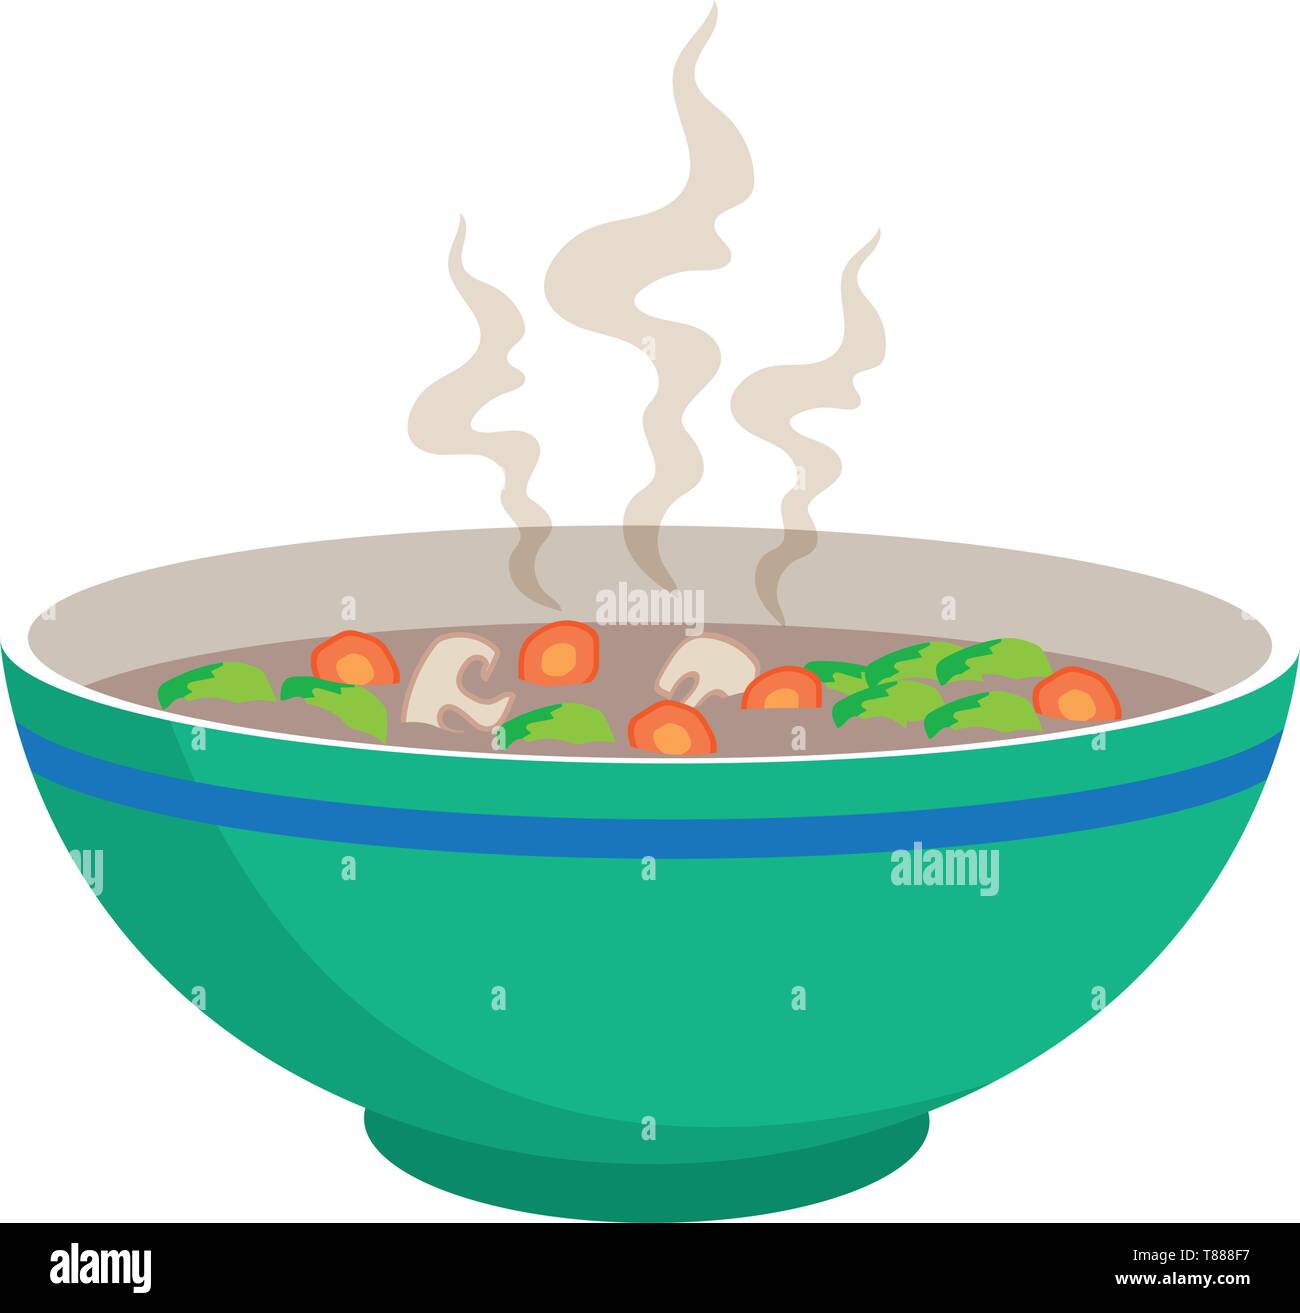 Soupe de nouilles chaudes avec des boulettes de viande dans un bol chinois et les cuillères sur fond blanc, vector illustration Illustration de Vecteur